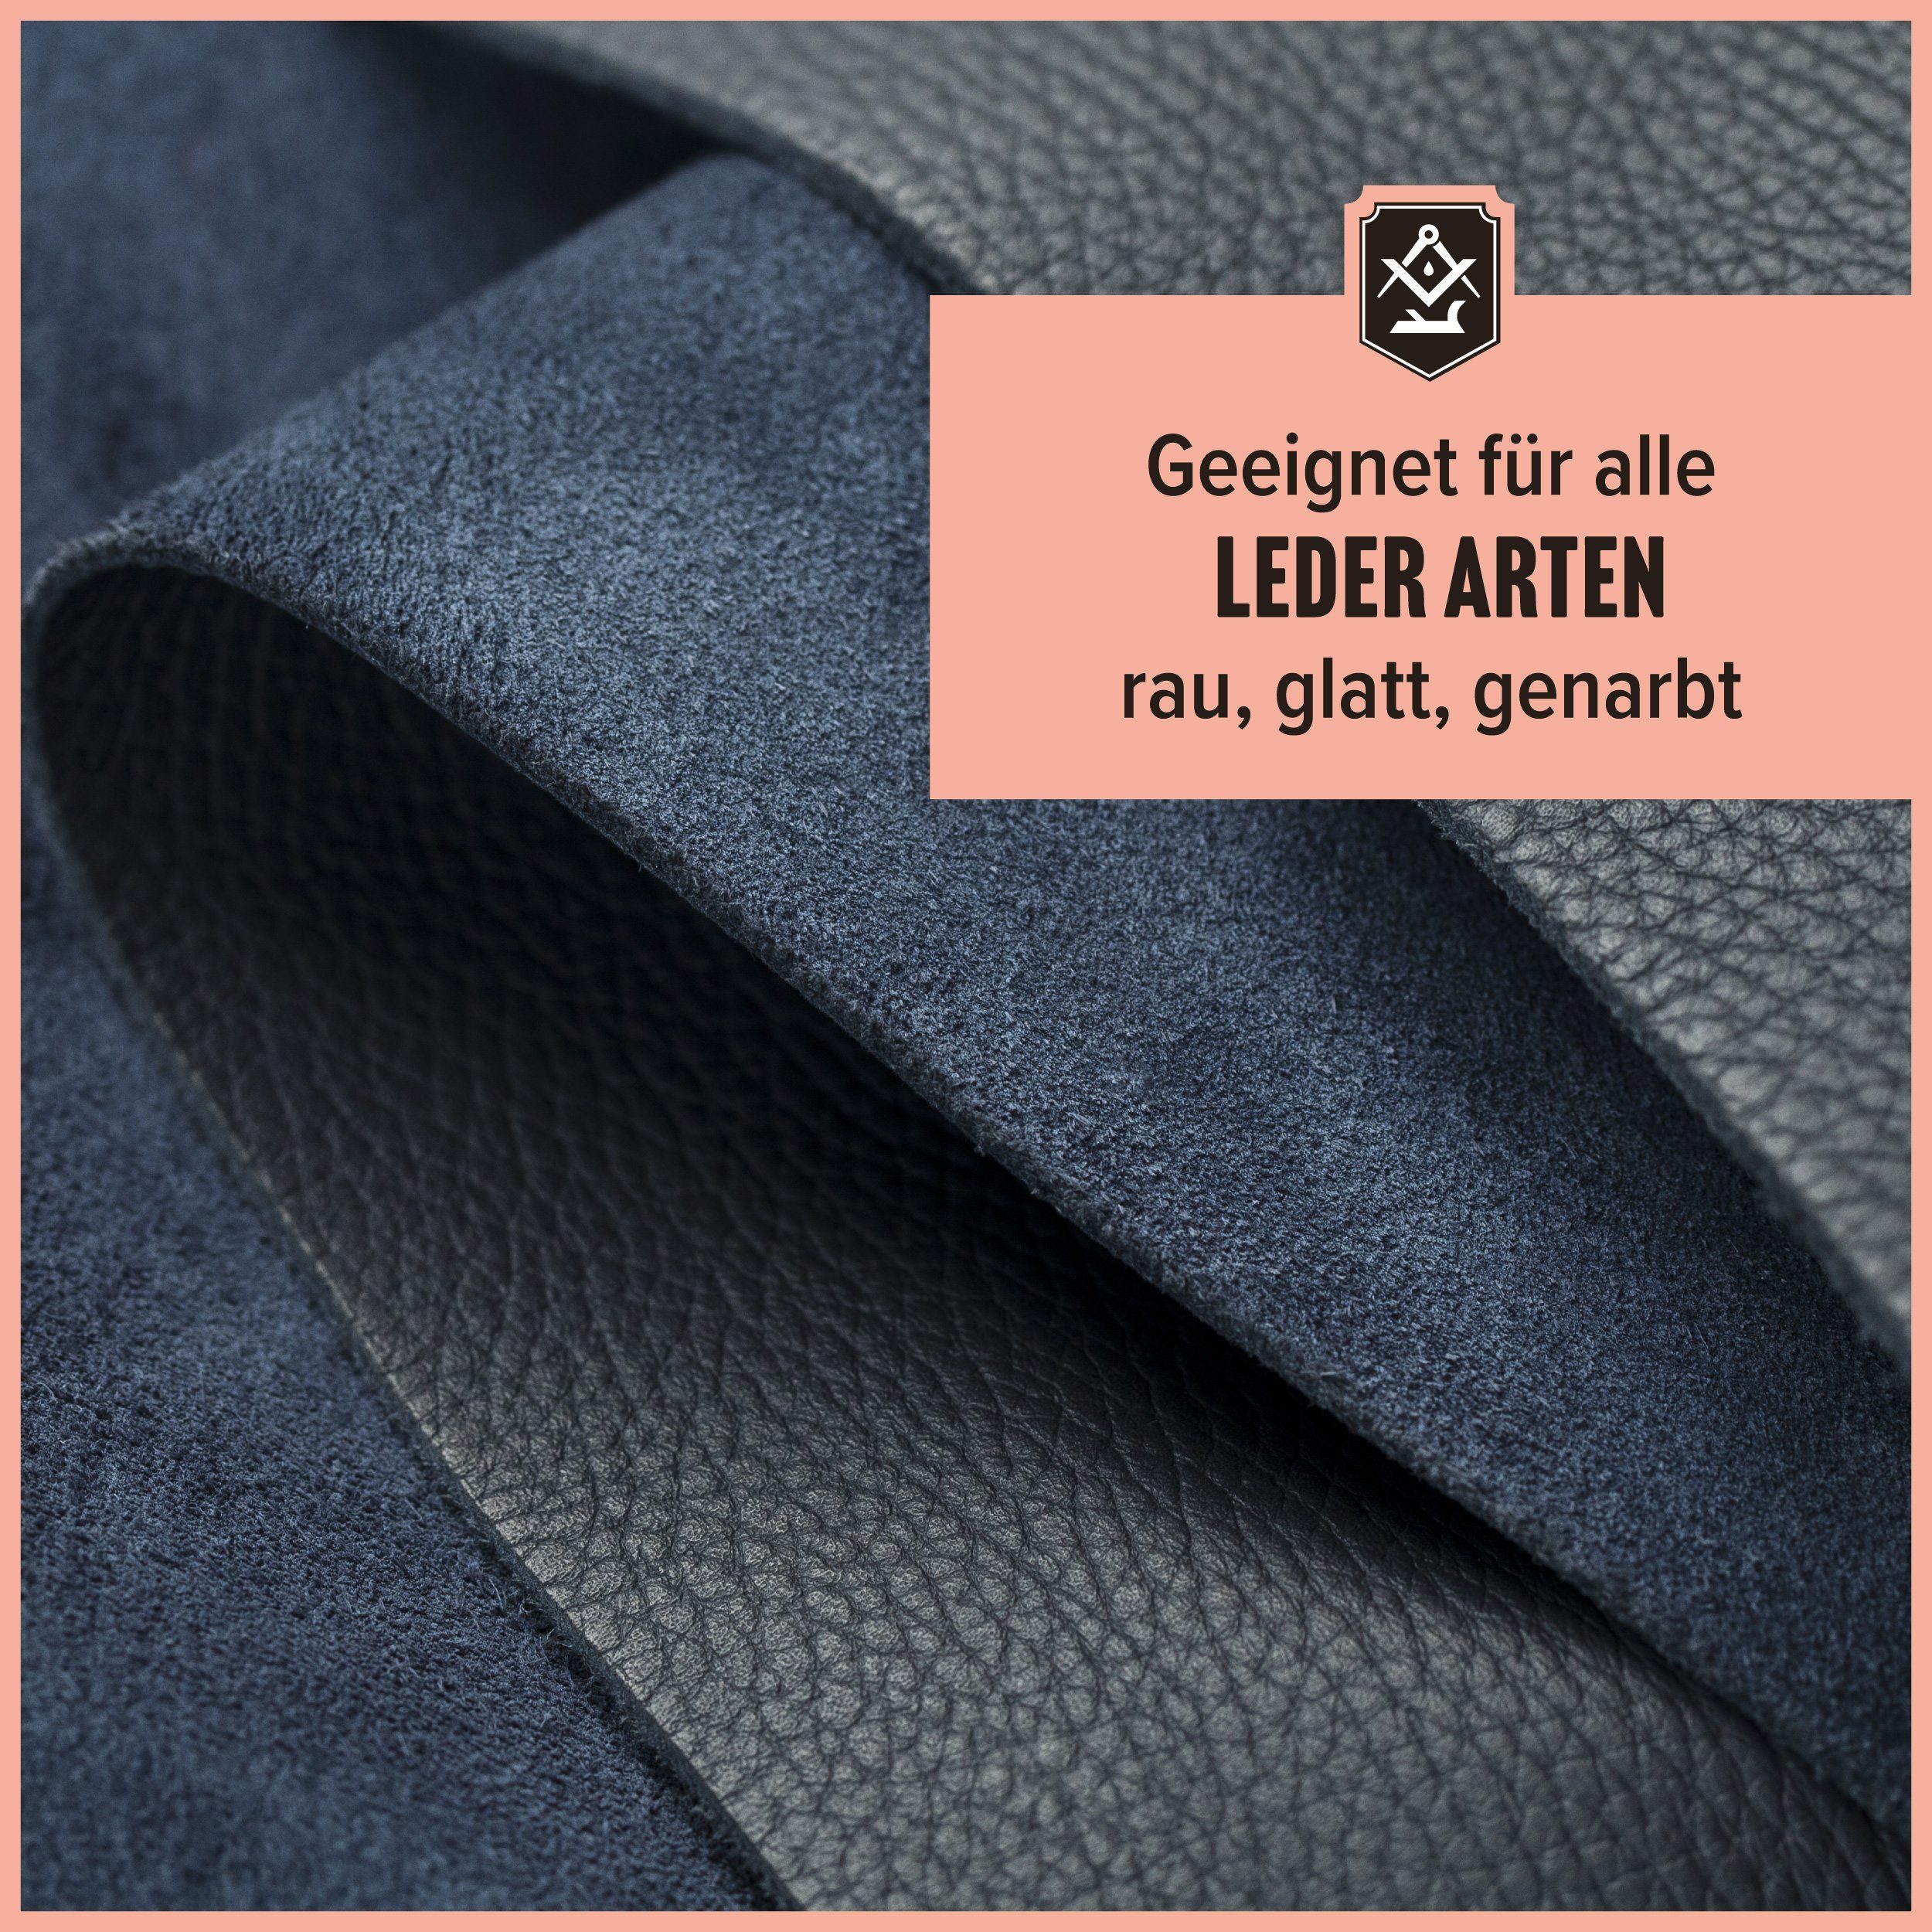 - Reiniger - Lederreinigung Lederarten Set Made - in 3-teilig & - Germany) Schrader - Lederkleidung und Poliertuch Ledermöbel Lederreiniger (für alle